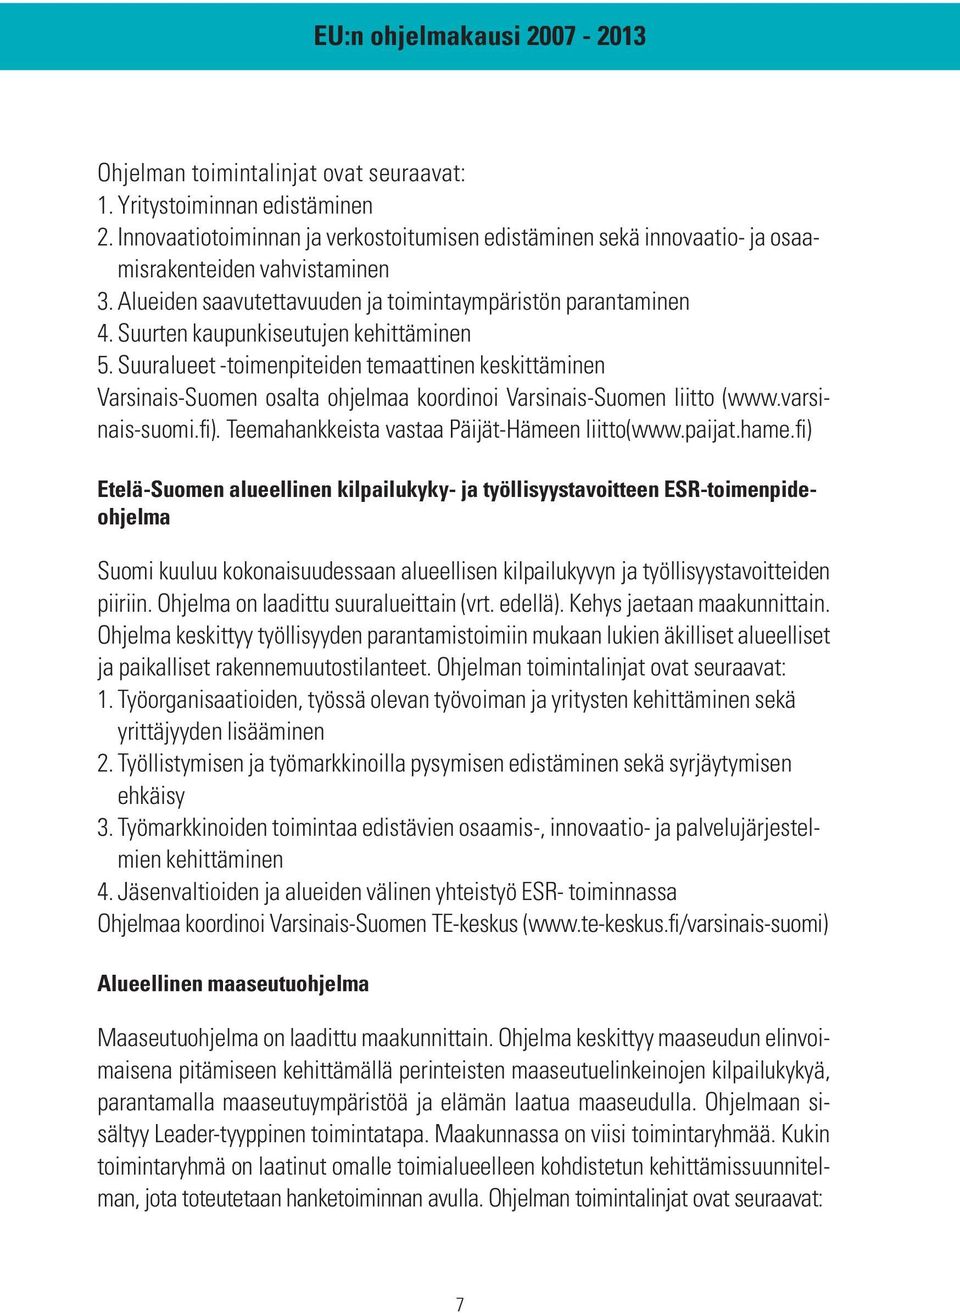 Suuralueet -toimenpiteiden temaattinen keskittäminen Varsinais-Suomen osalta ohjelmaa koordinoi Varsinais-Suomen liitto (www.varsinais-suomi.fi). Teemahankkeista vastaa Päijät-Hämeen liitto(www.